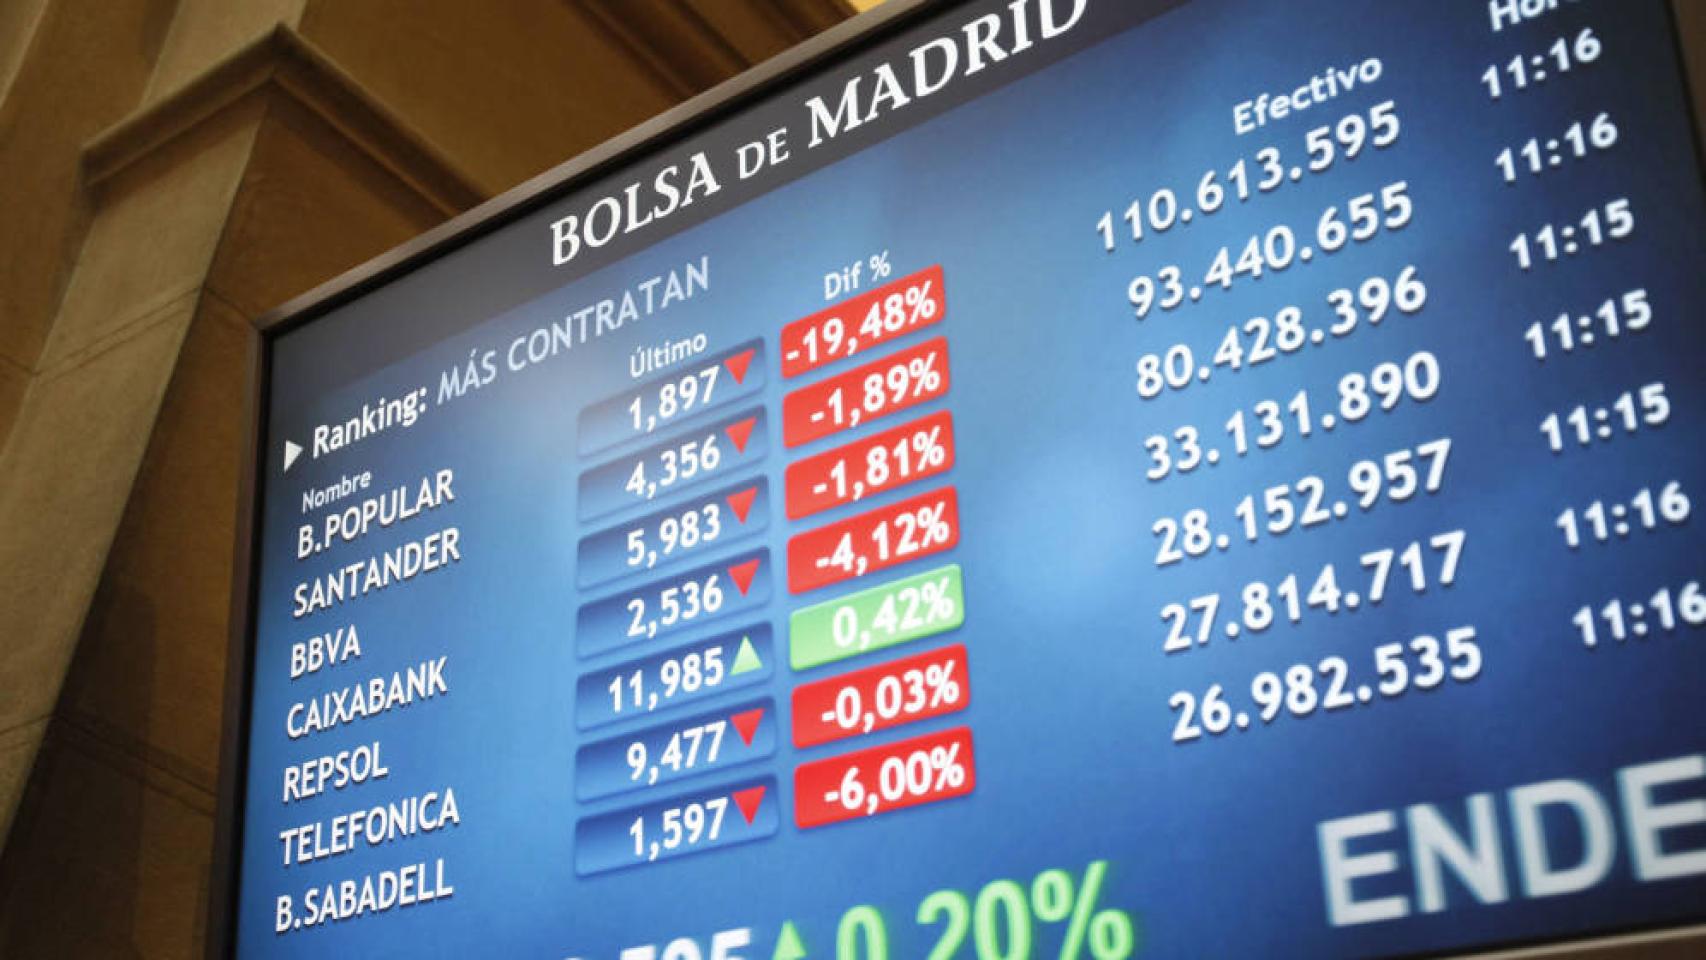 Una de las pantallas de la Bolsa de Madris, en una imagen de archivo.